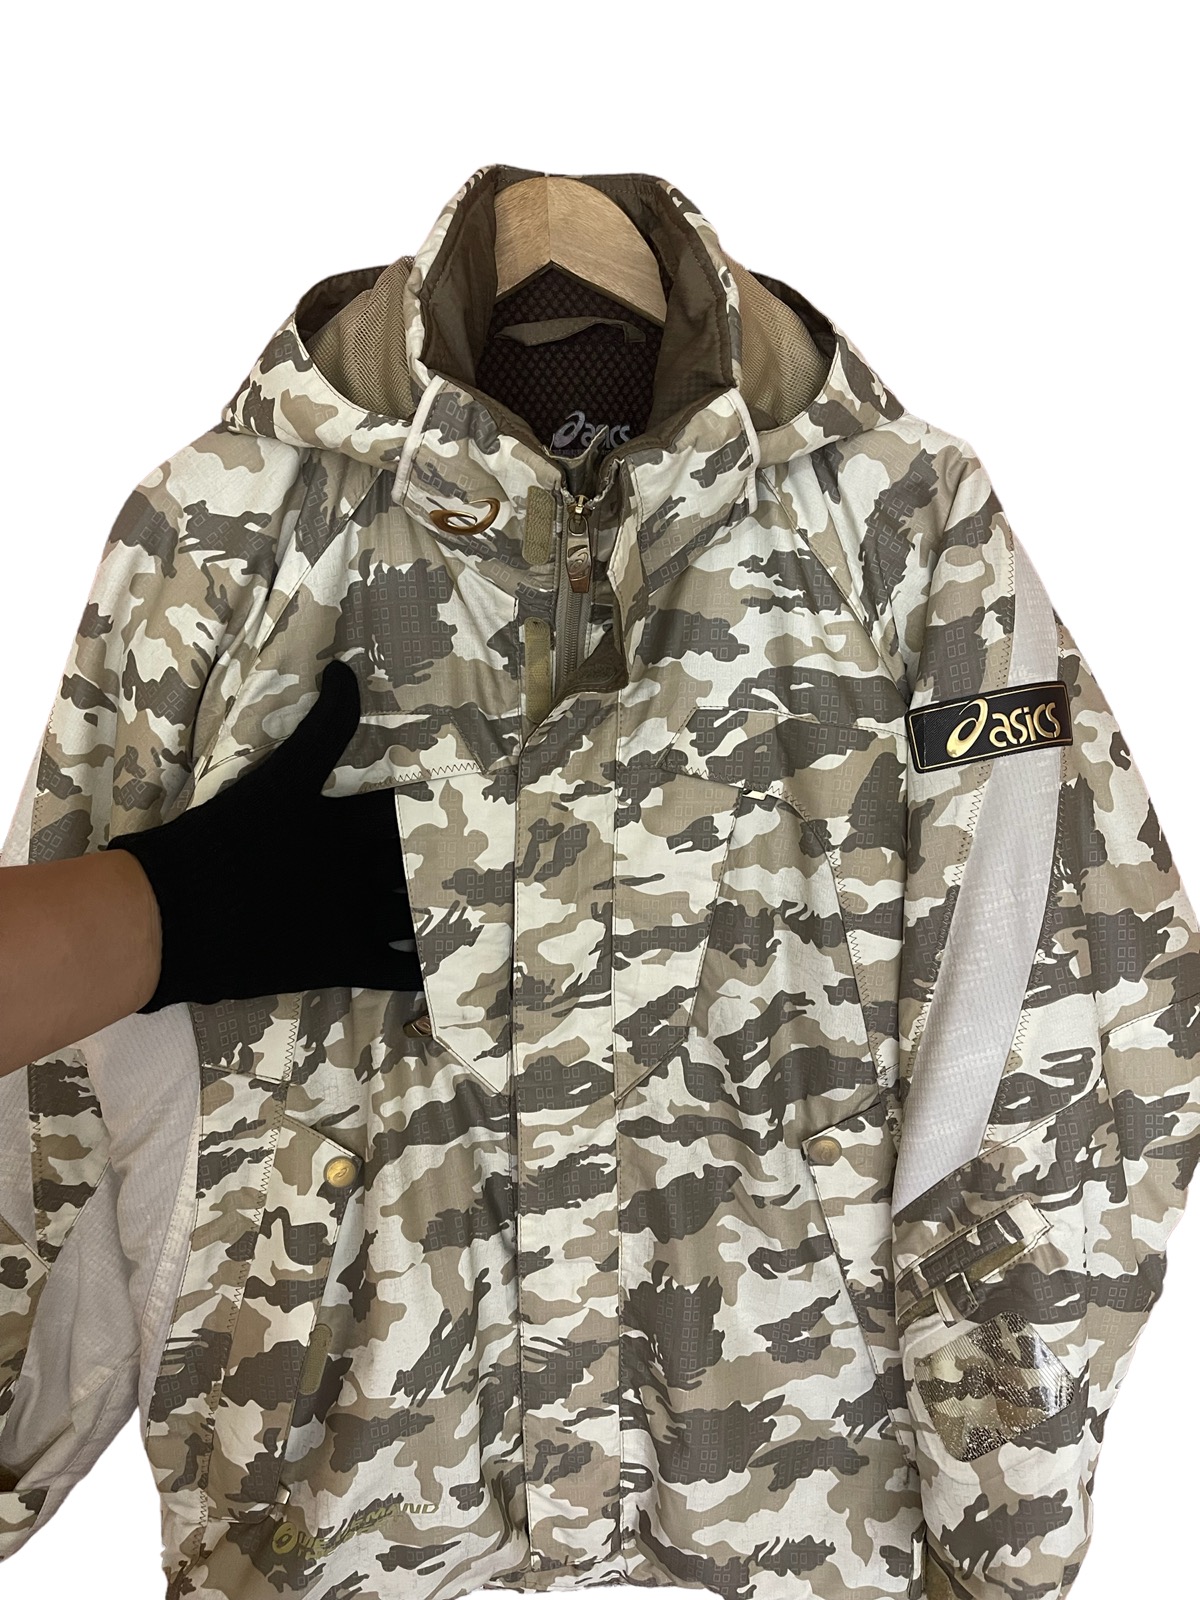 Asics jacket cold weather jacket - 12